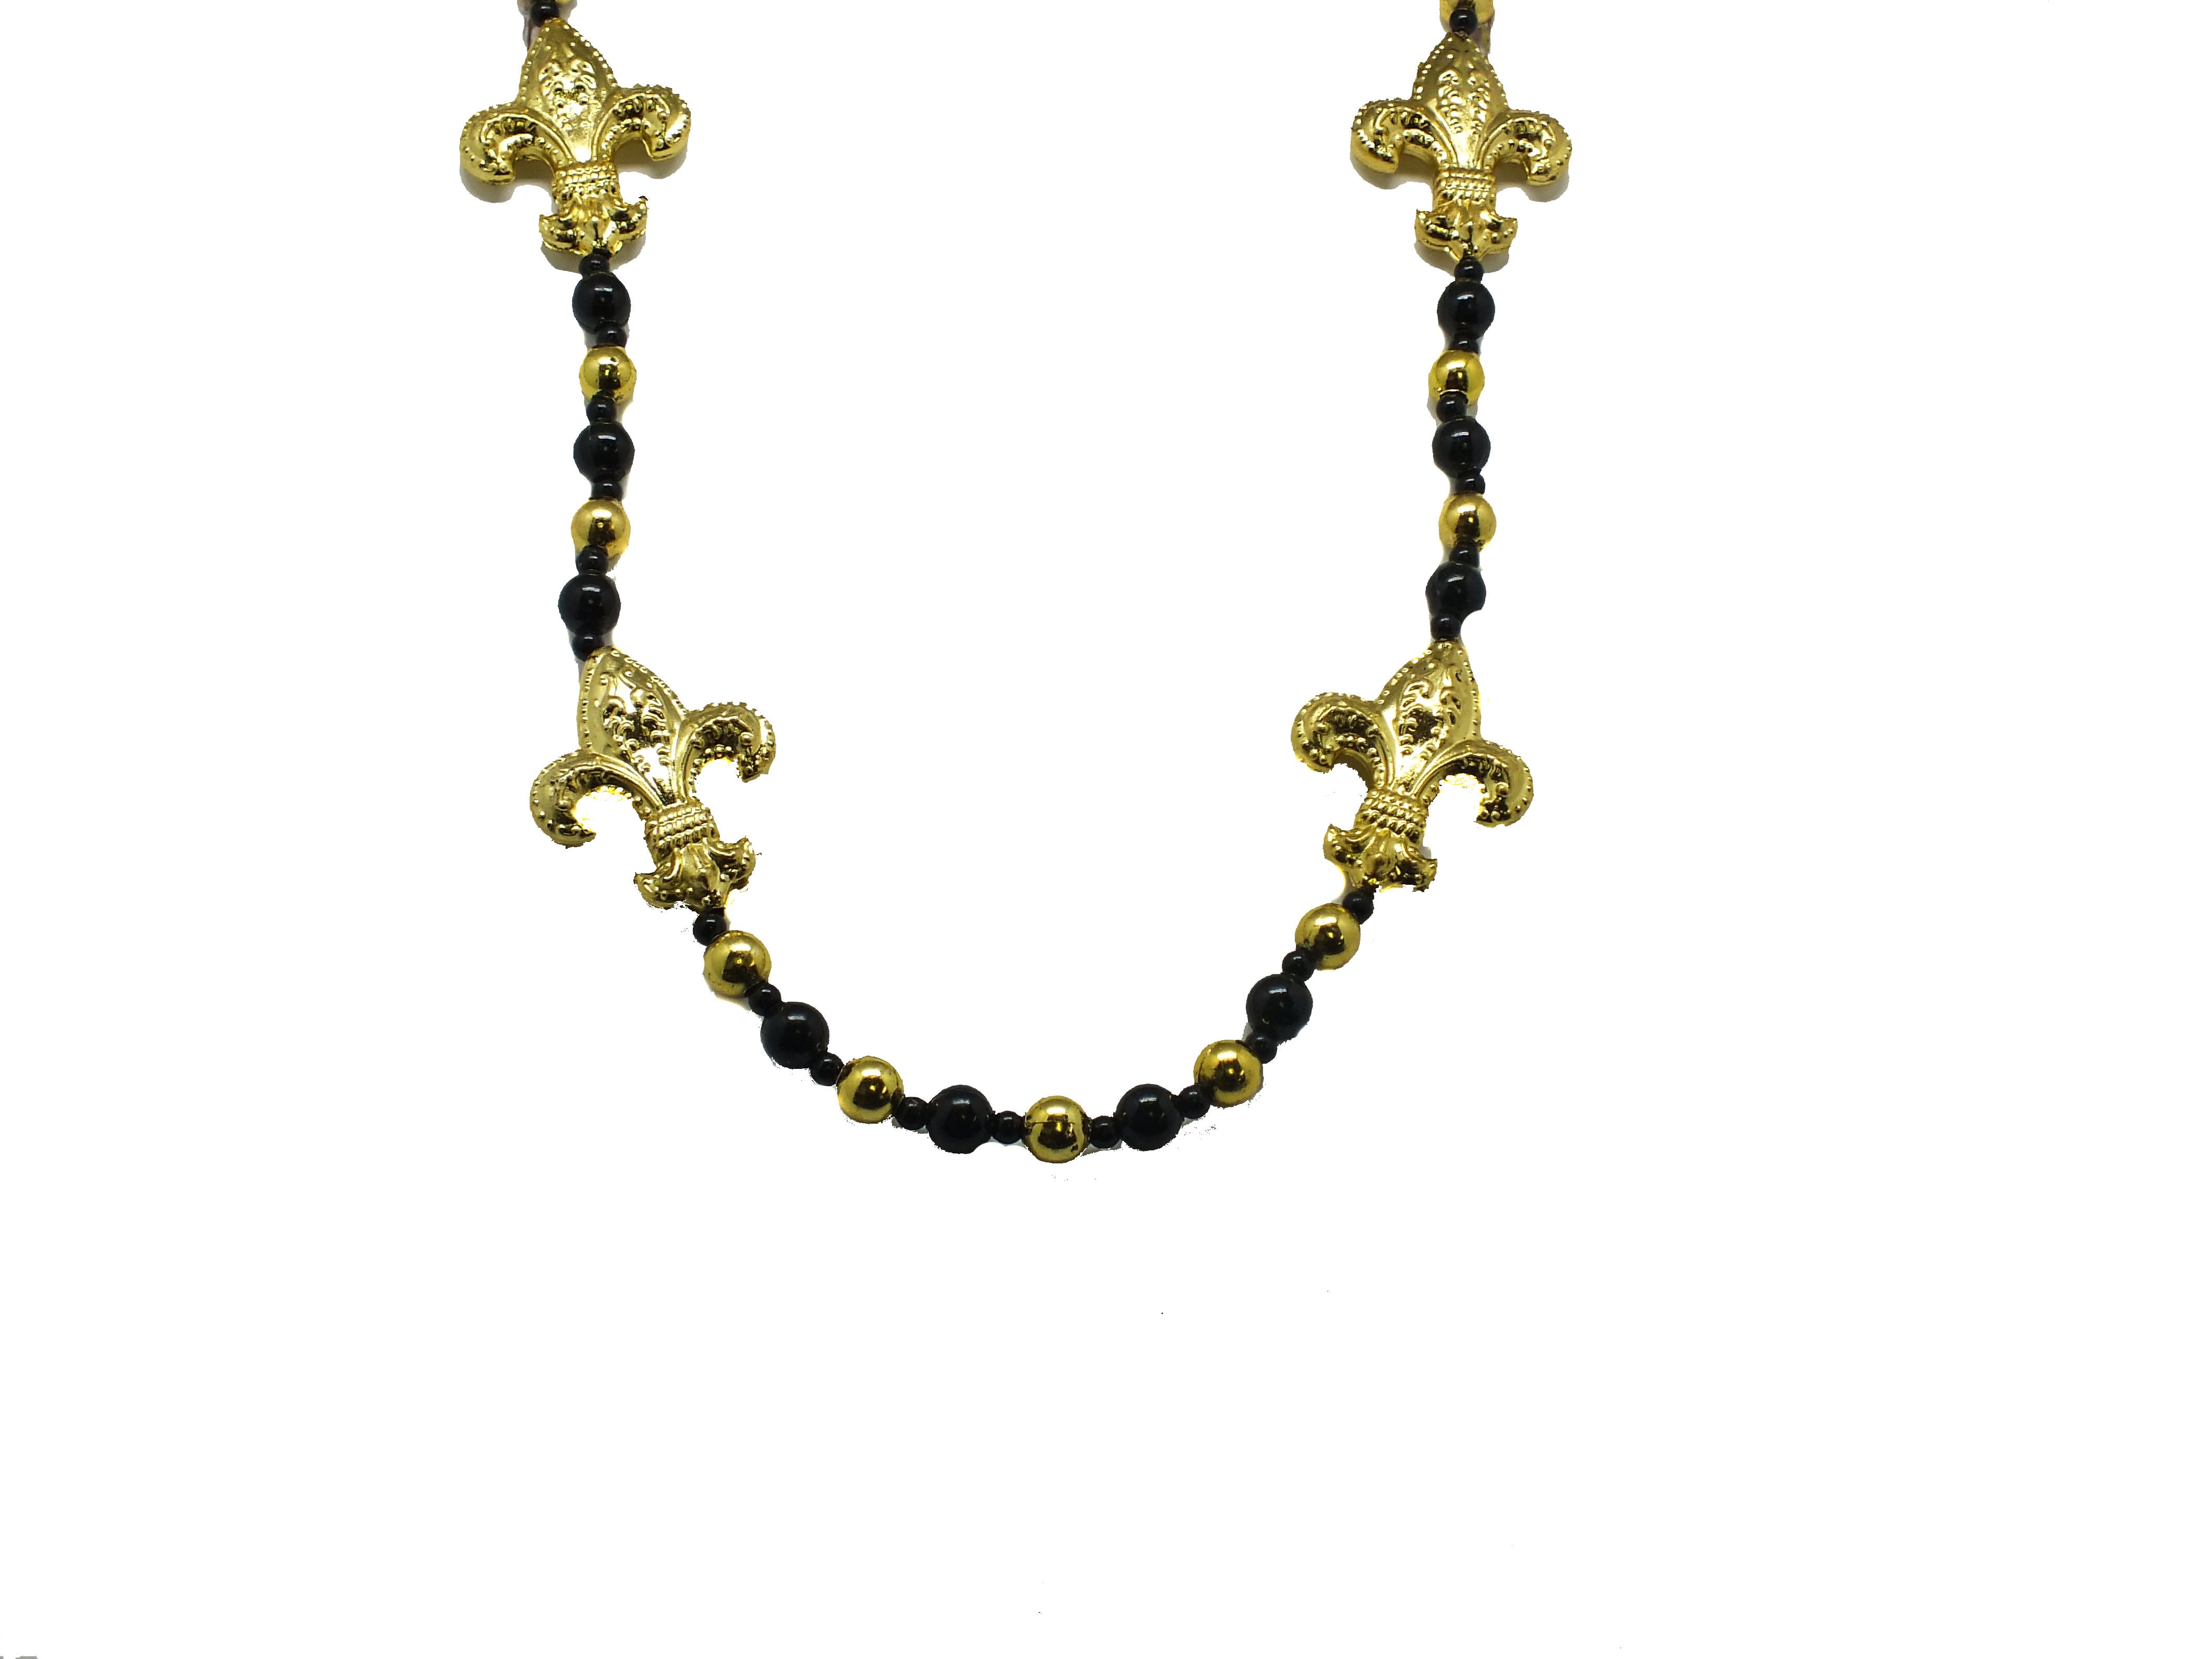 42" Black and Gold Fleur de Lis Beads